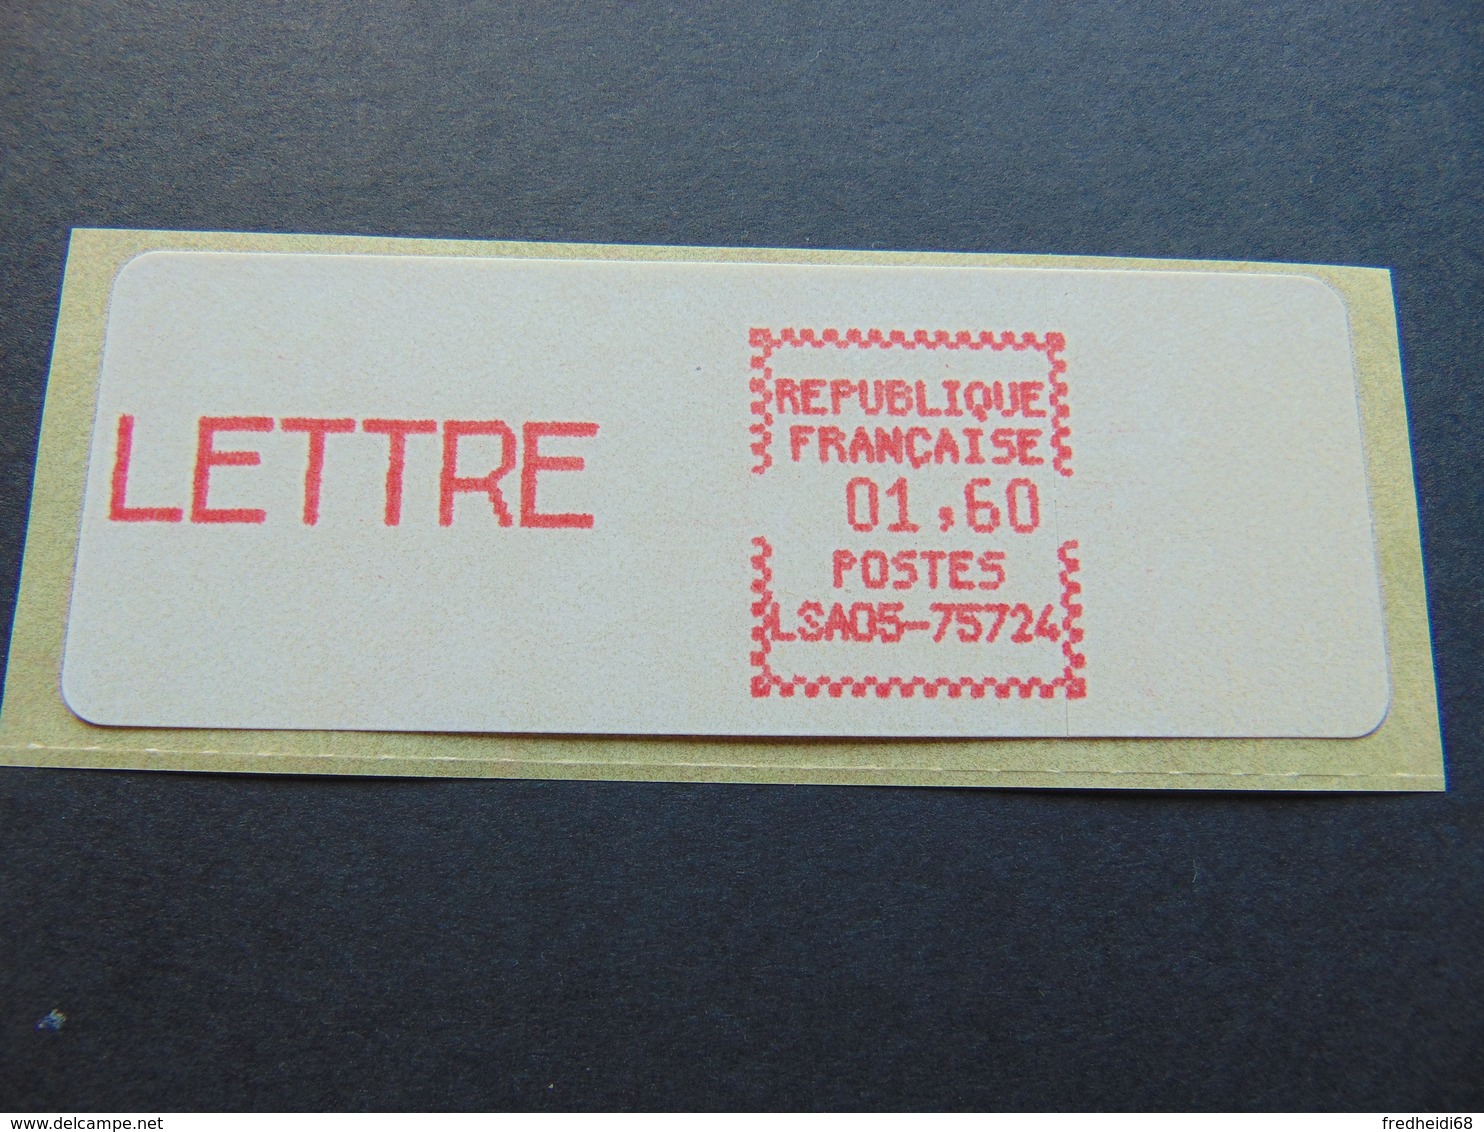 Très Beau Timbre De Distributeurs N°. 28 - Décollage De La Vignette Sur Son Support - 1981-84 Types « LS » & « LSA » (prototypes)